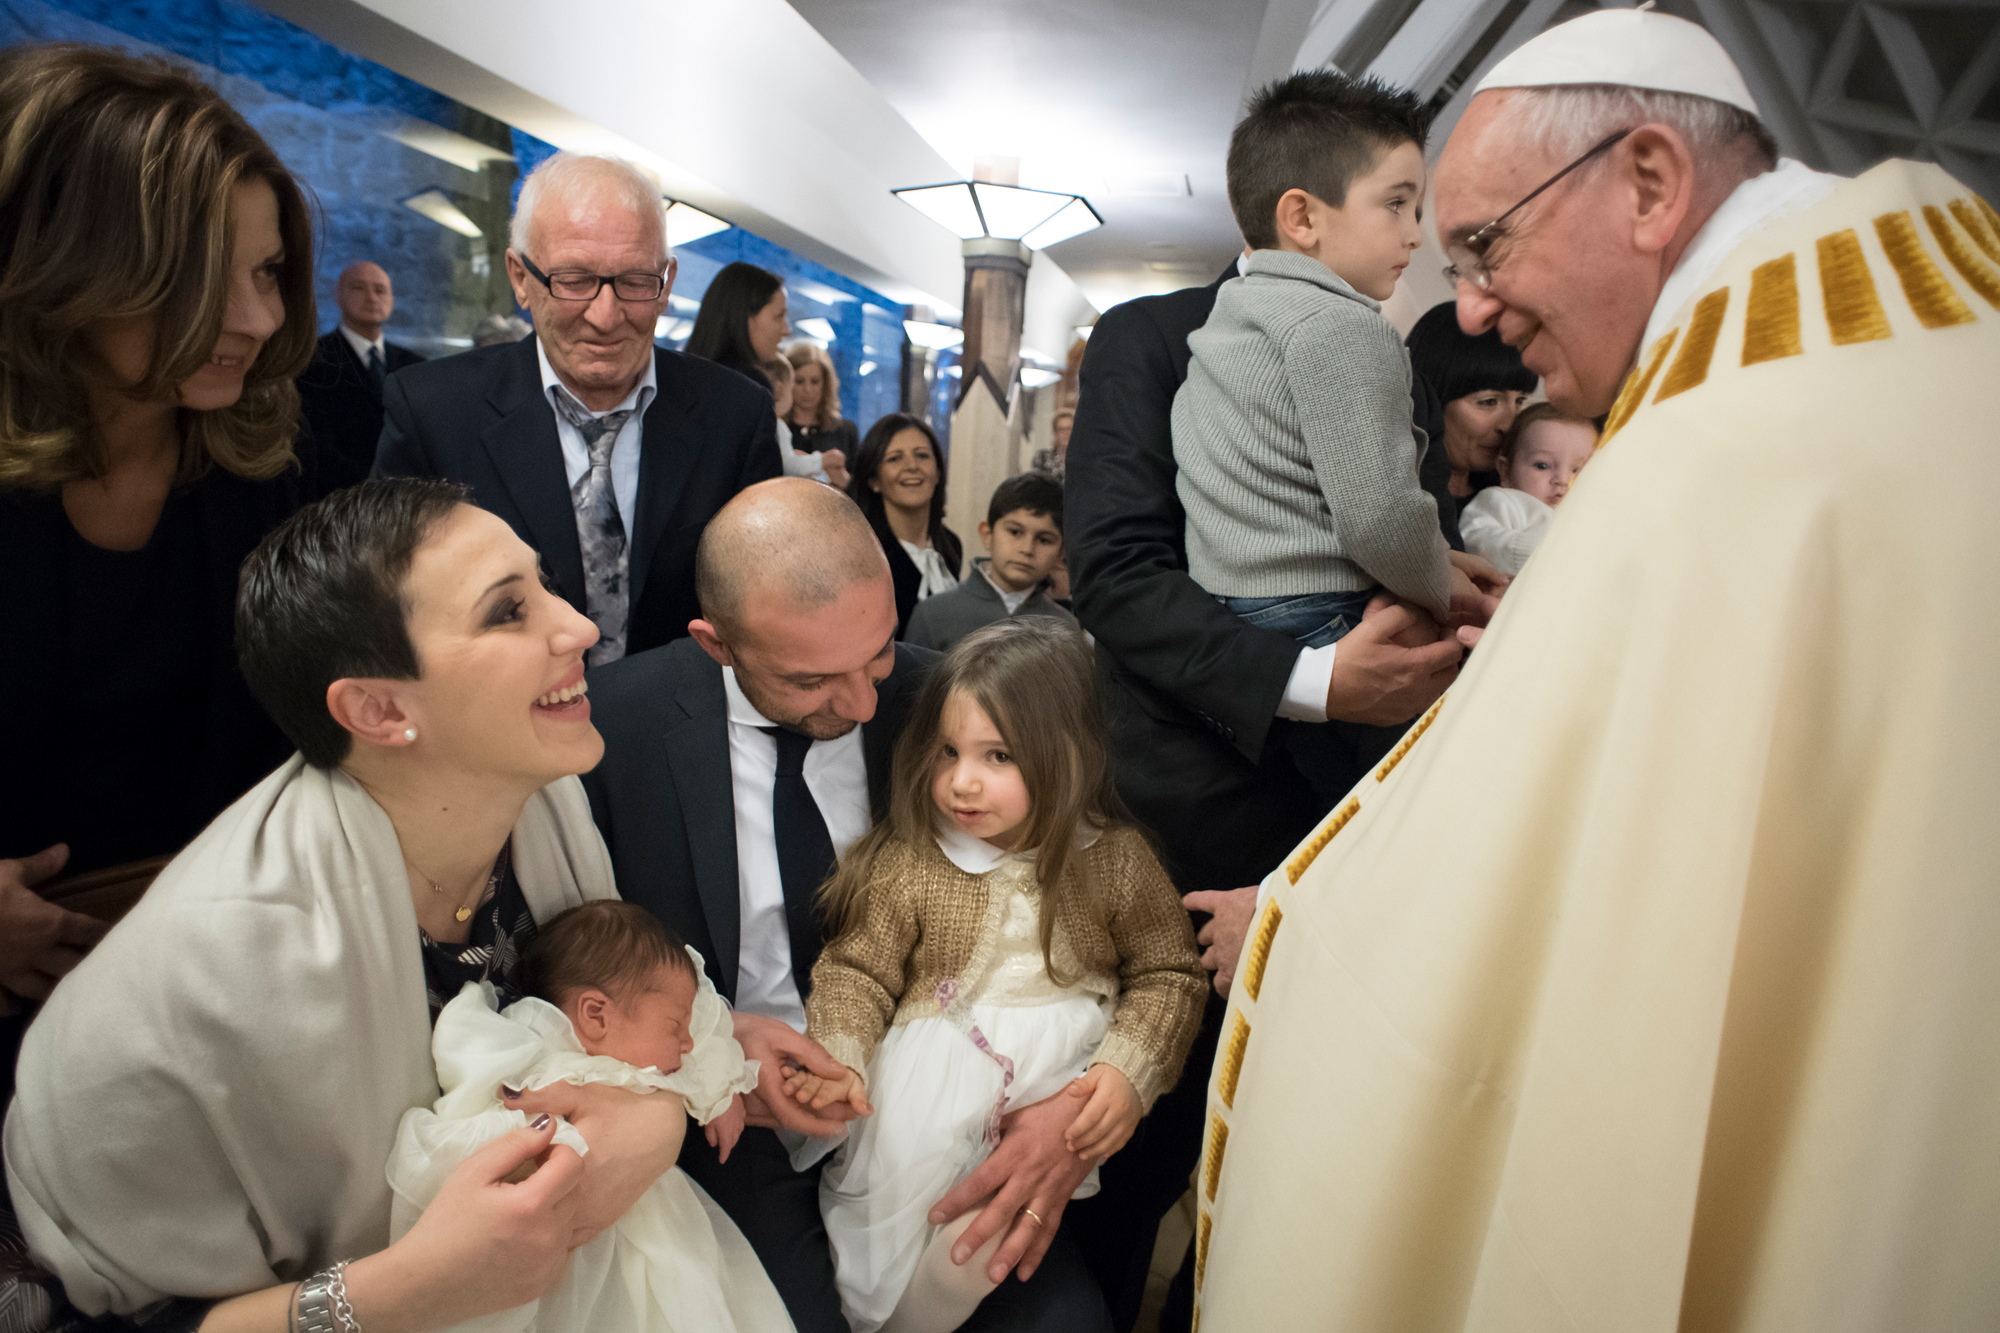 El Papa Francisco bautizó a 13 niños del terremoto en Italia, el sábado 14 de enero en la tarde en Santa Marta 